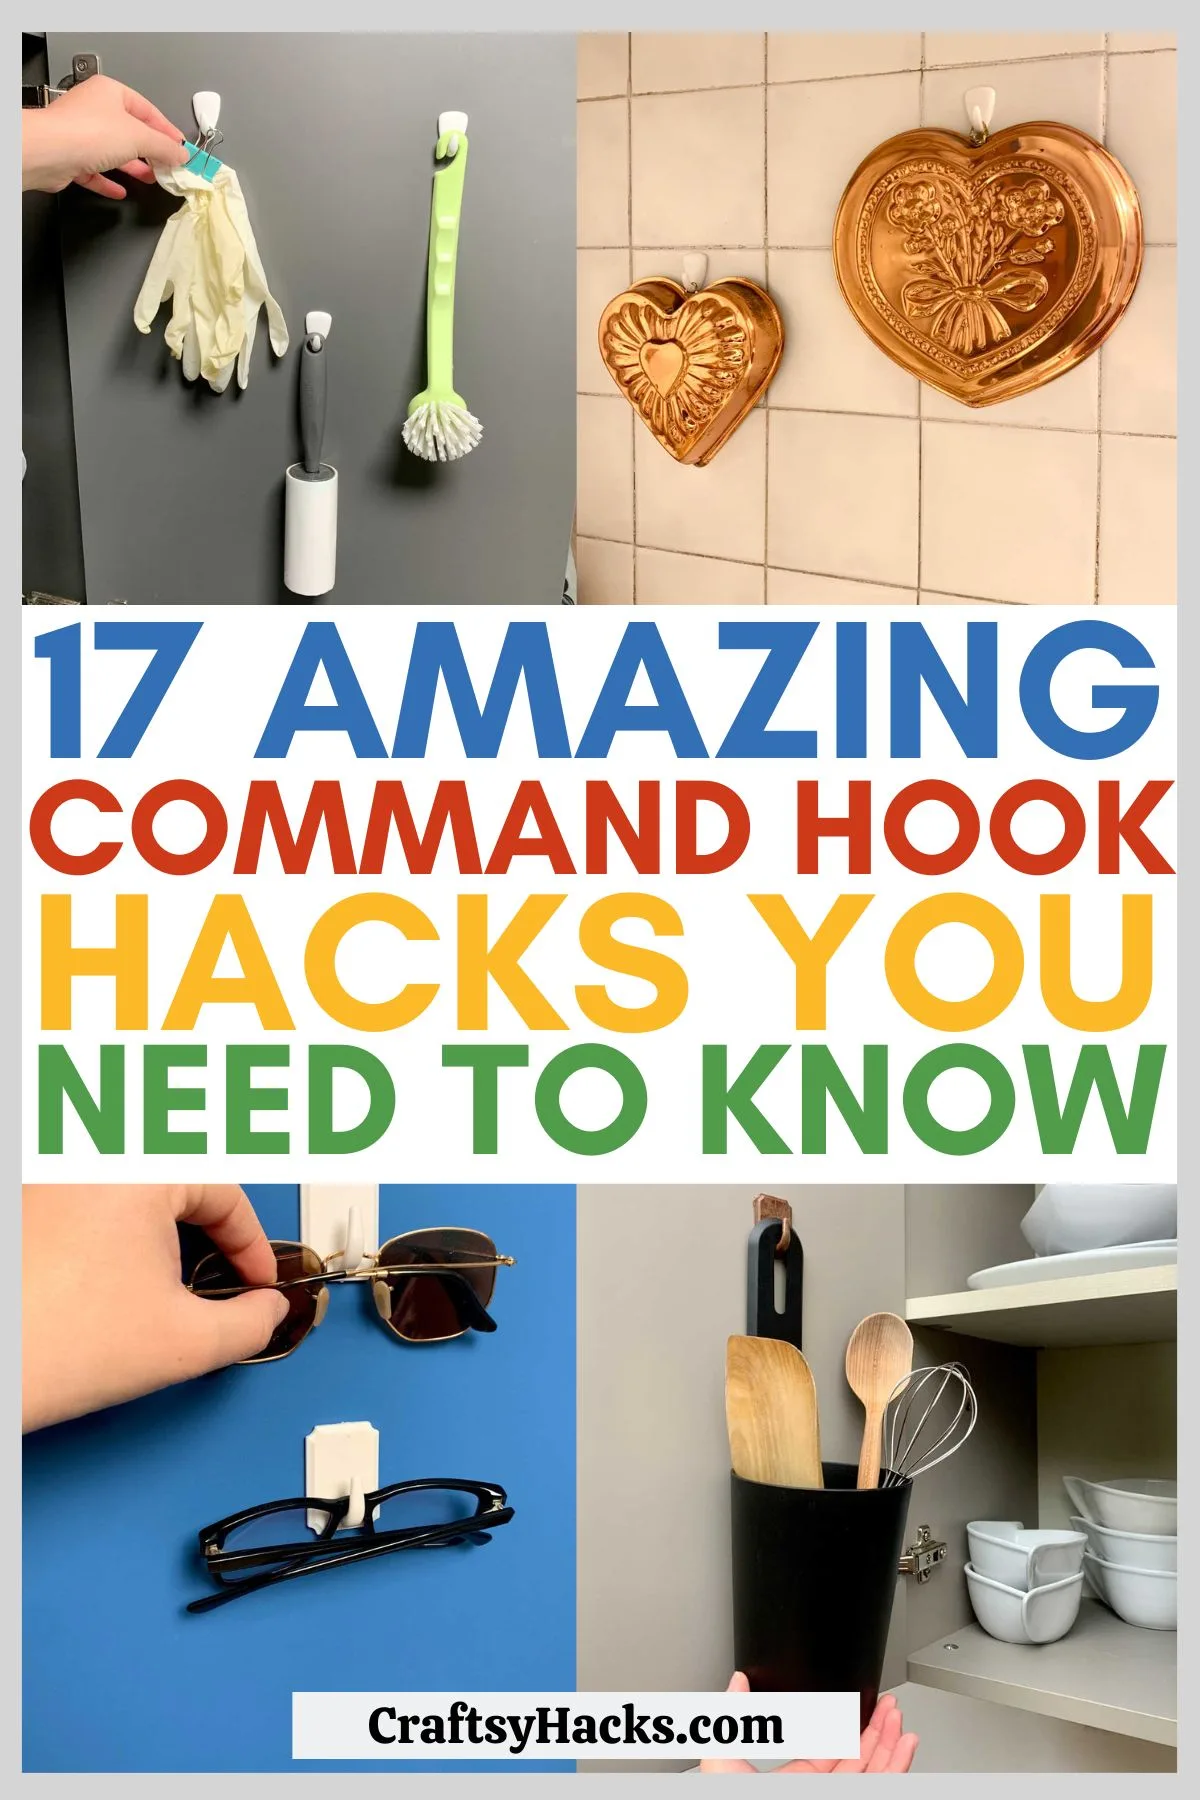 17 Incredible Command Hook Hacks - Craftsy Hacks